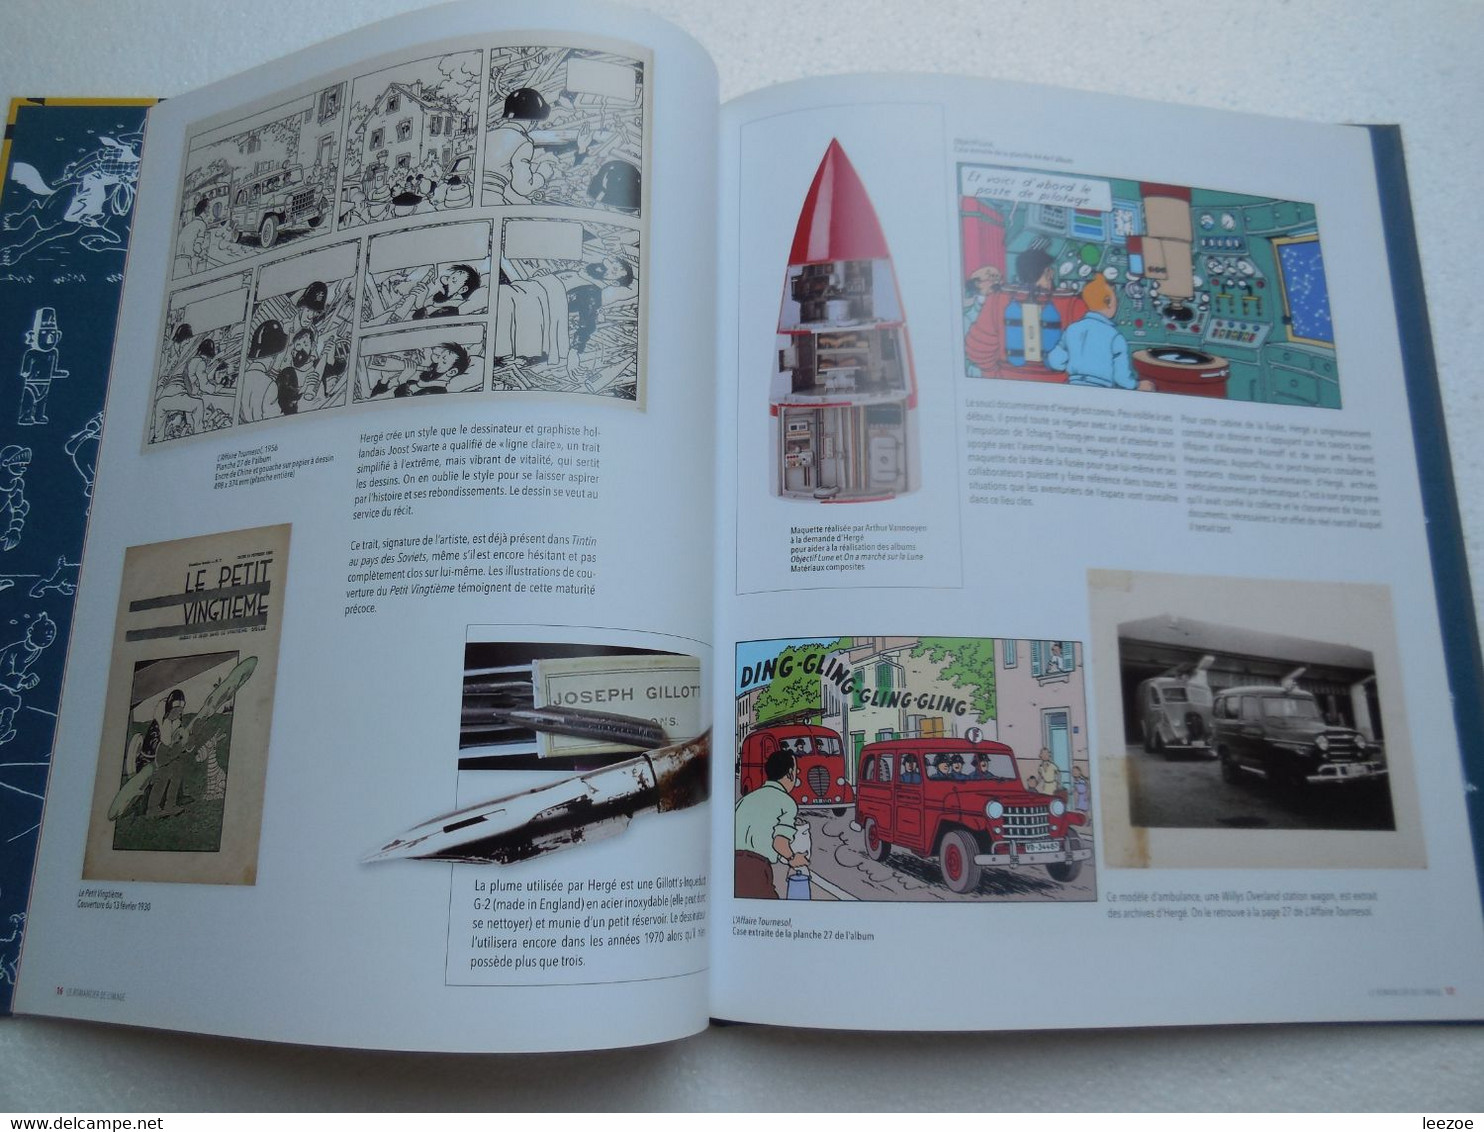 Hergé, l'exposition de papier Album relatif à l'exposition Hergé se déroulant à Paris au Grand Palais..PIN03.02.22